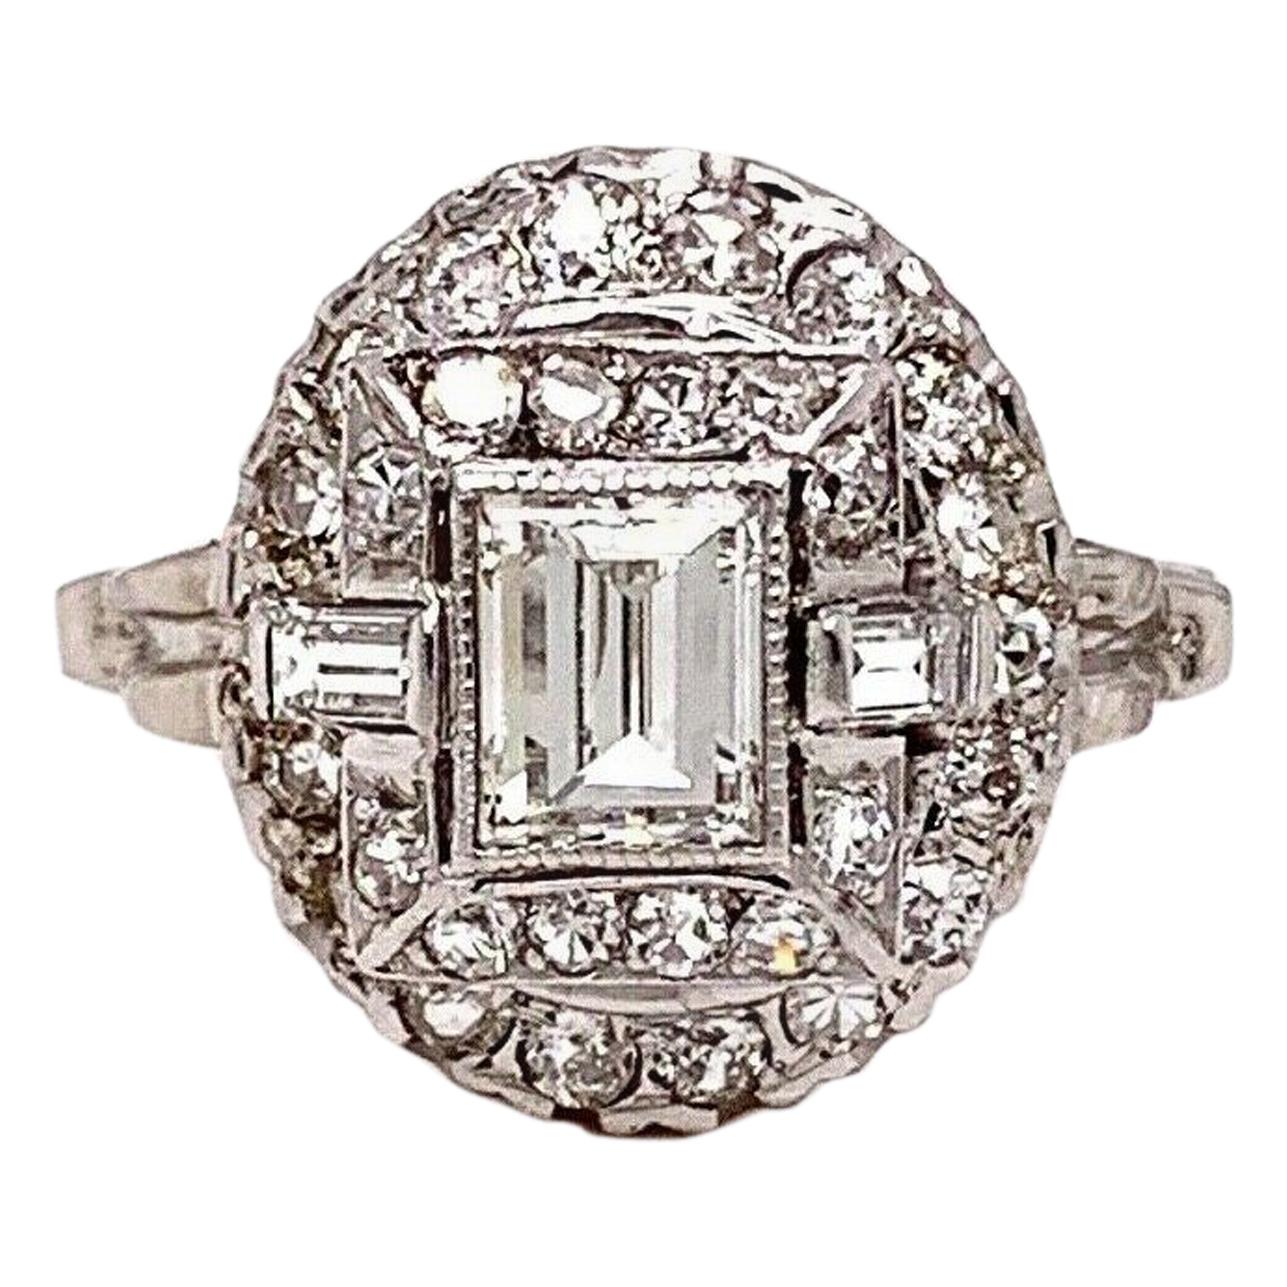 Antique Edwardian Era Diamond Ring 1.45 Carat G VS in 14 Karat White Gold For Sale